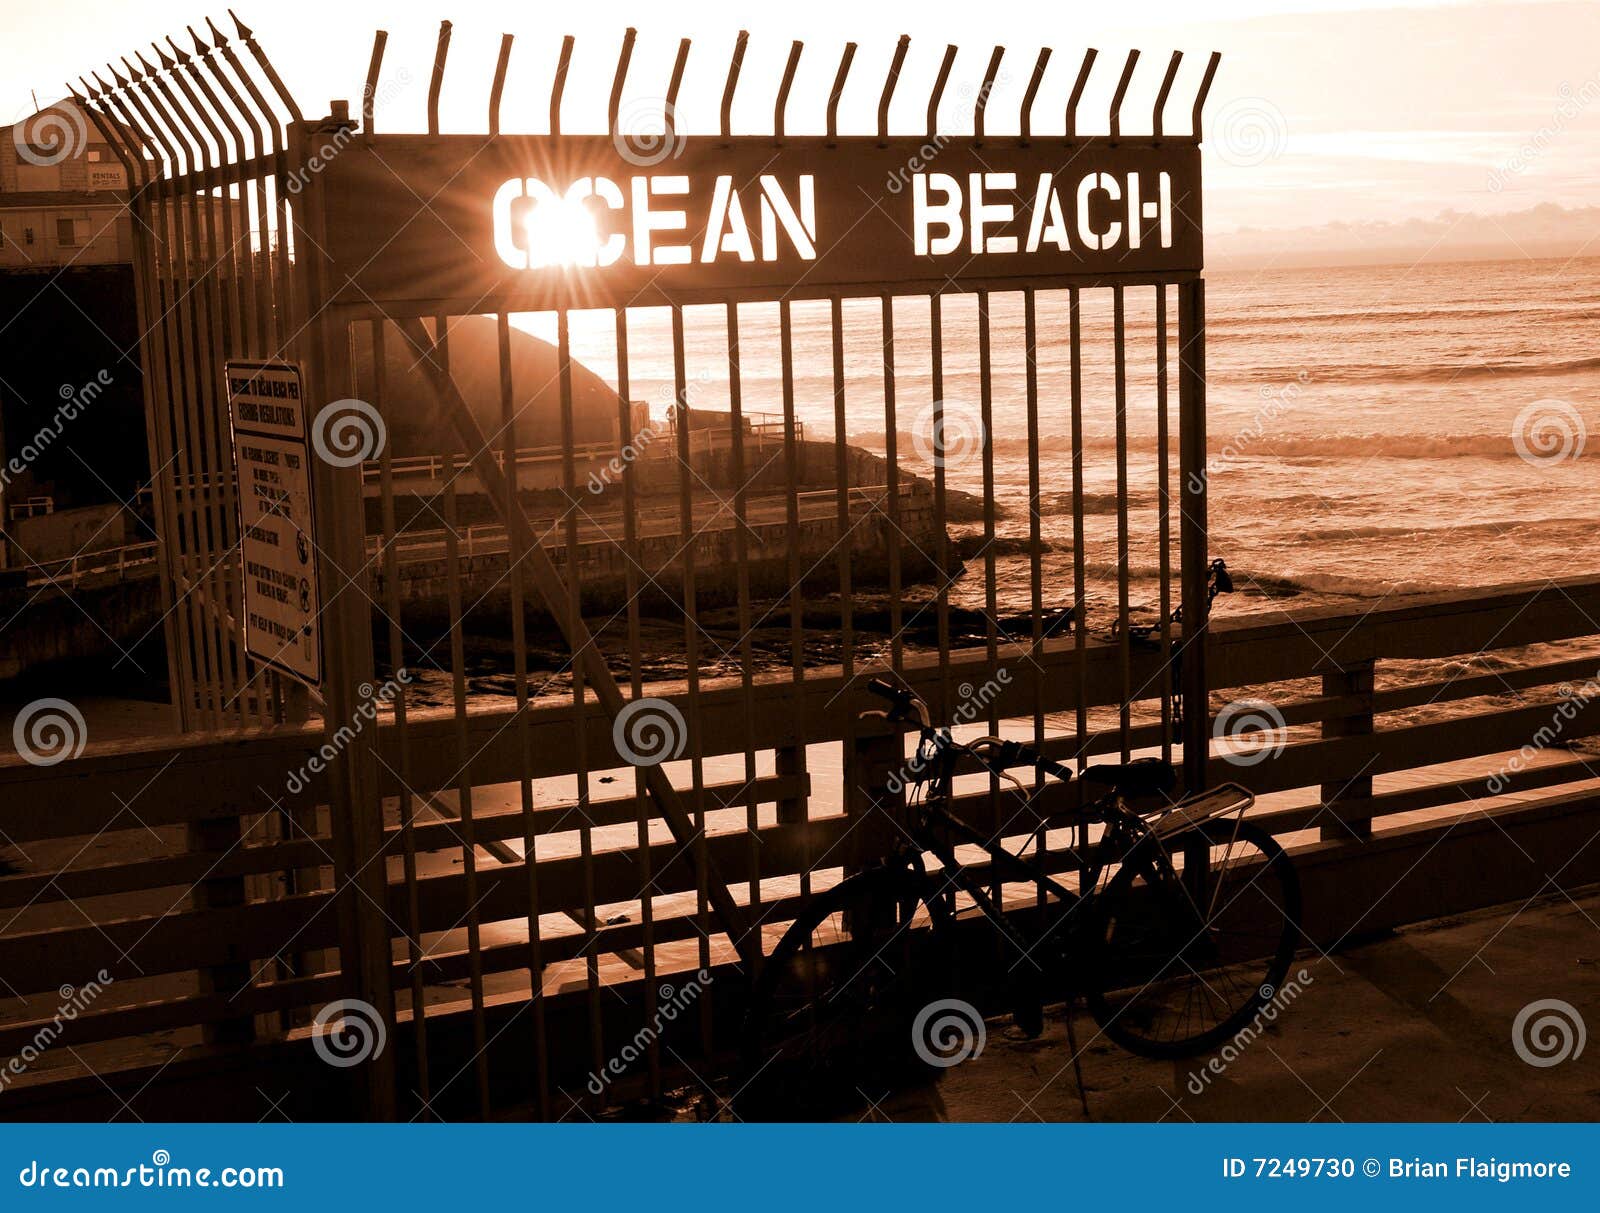 ocean beach pier